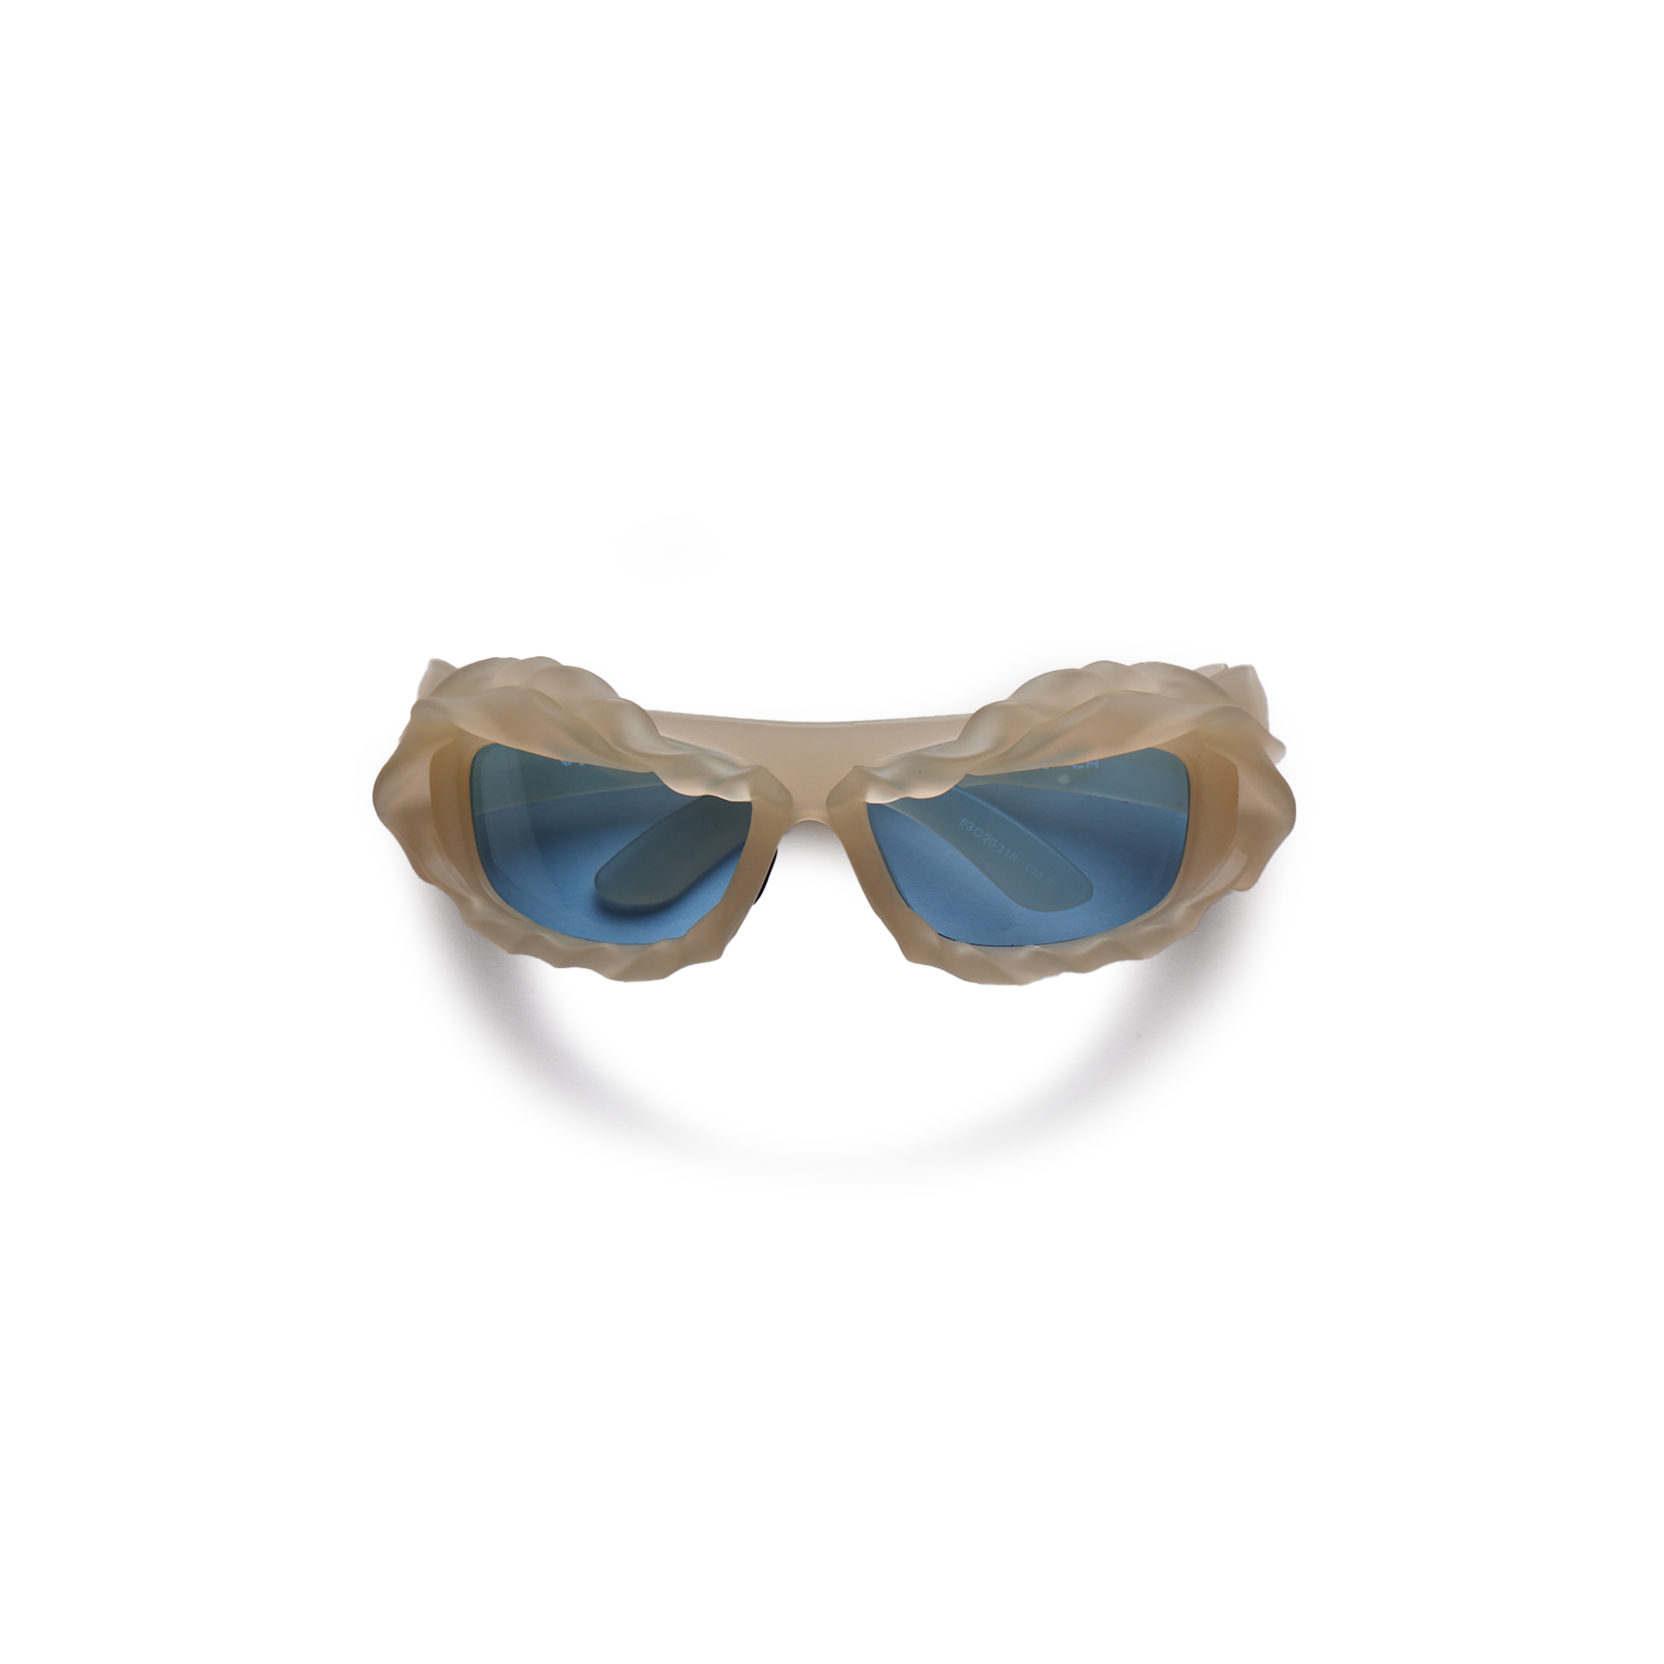 OTTOLINGER - Twisted Sunglasses product image